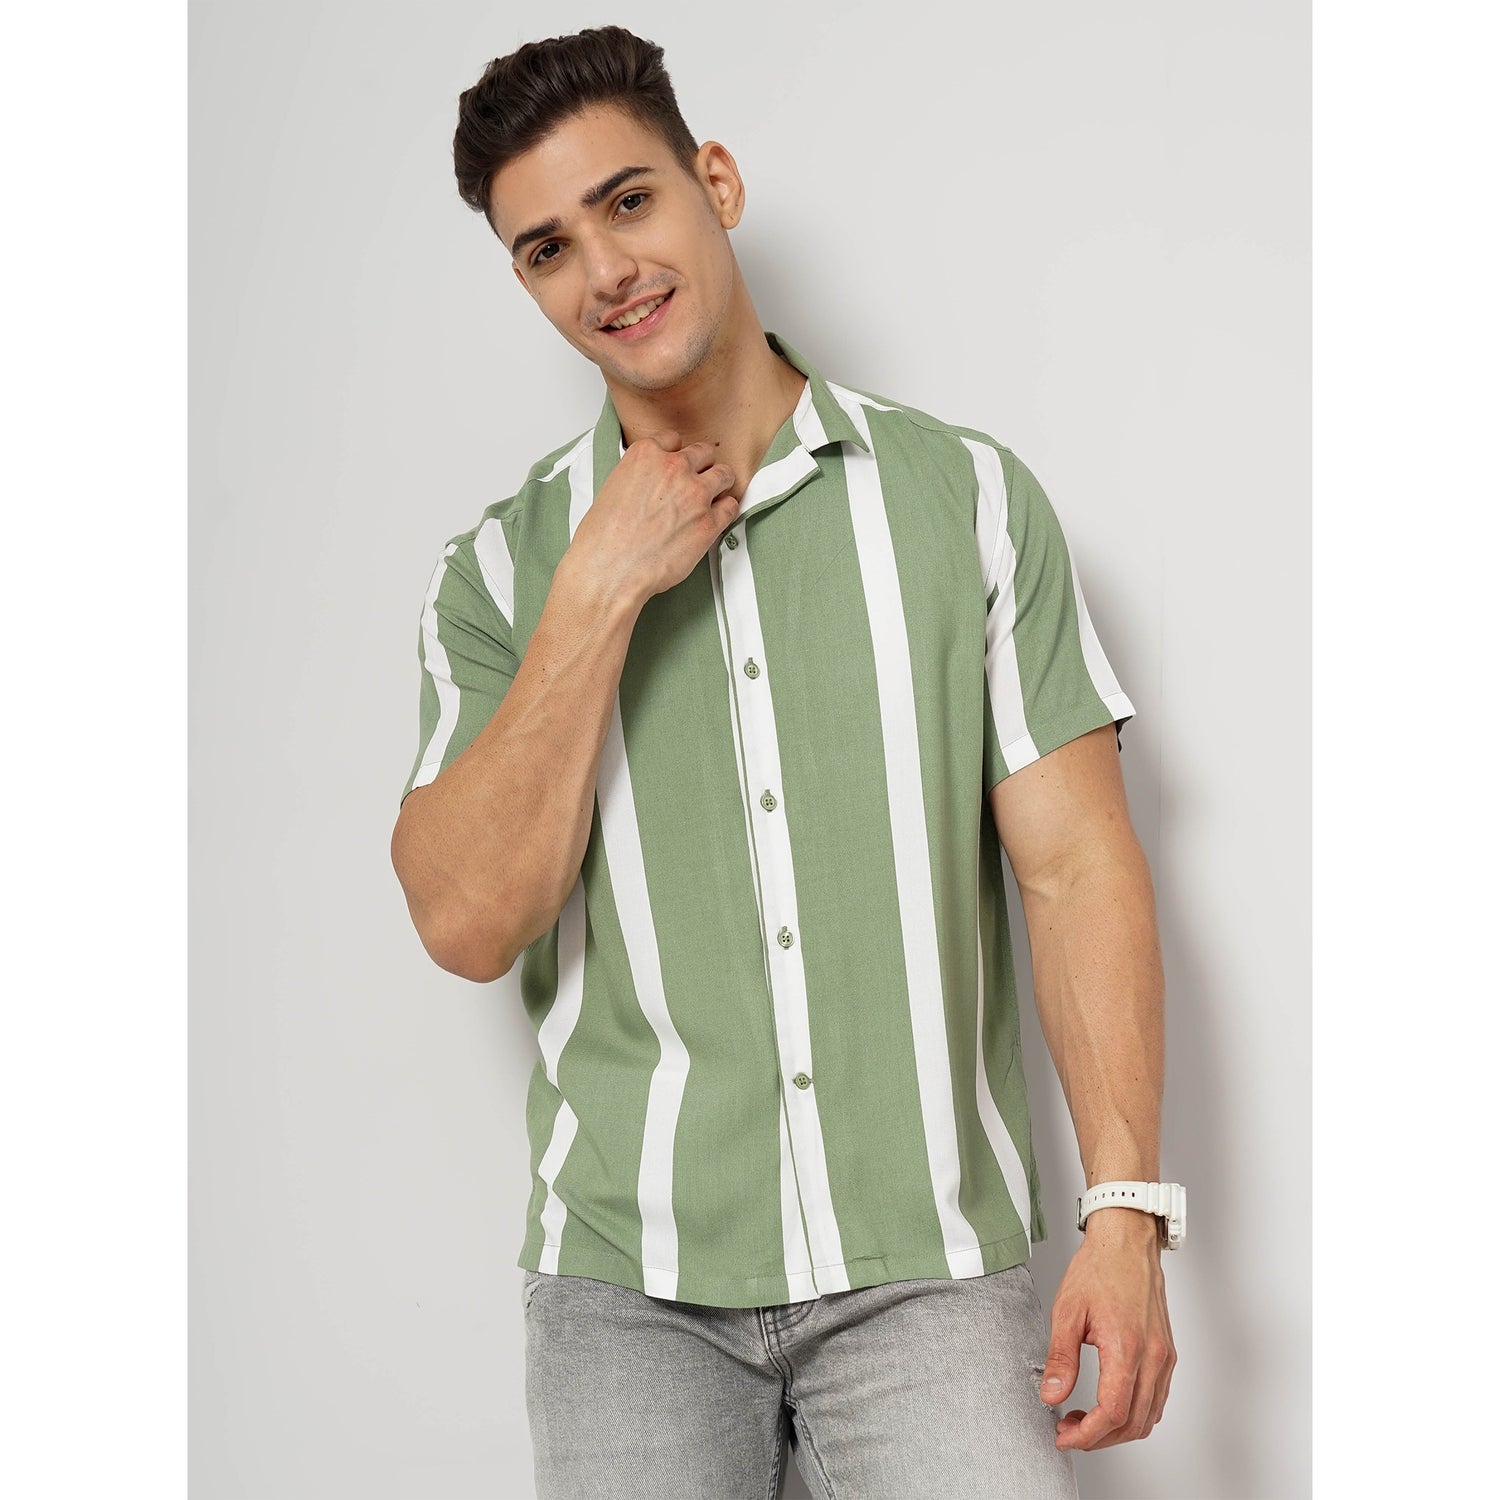 Green Viscose Soft Touch Shirt